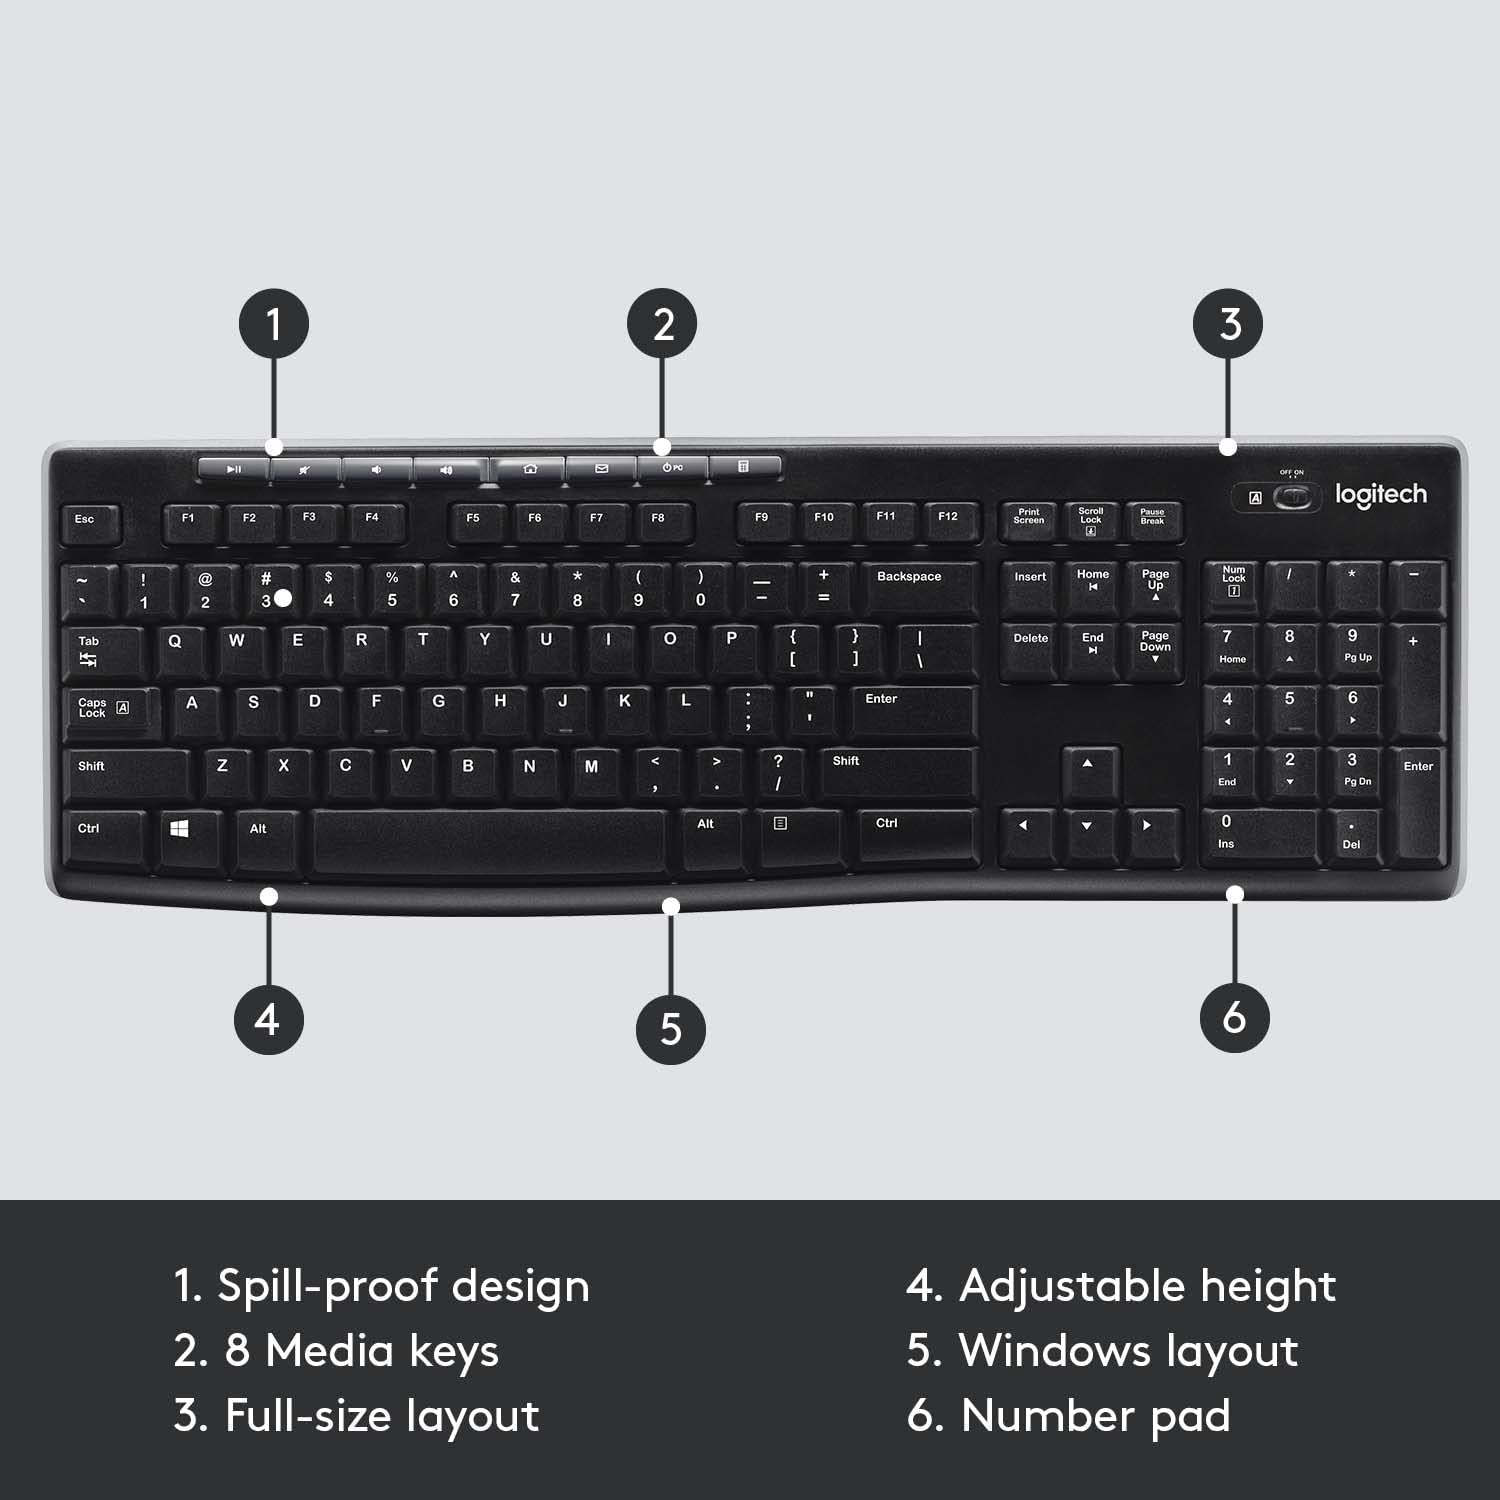 Logitech Wireless Keyboard K270 with Long-Range Wireless